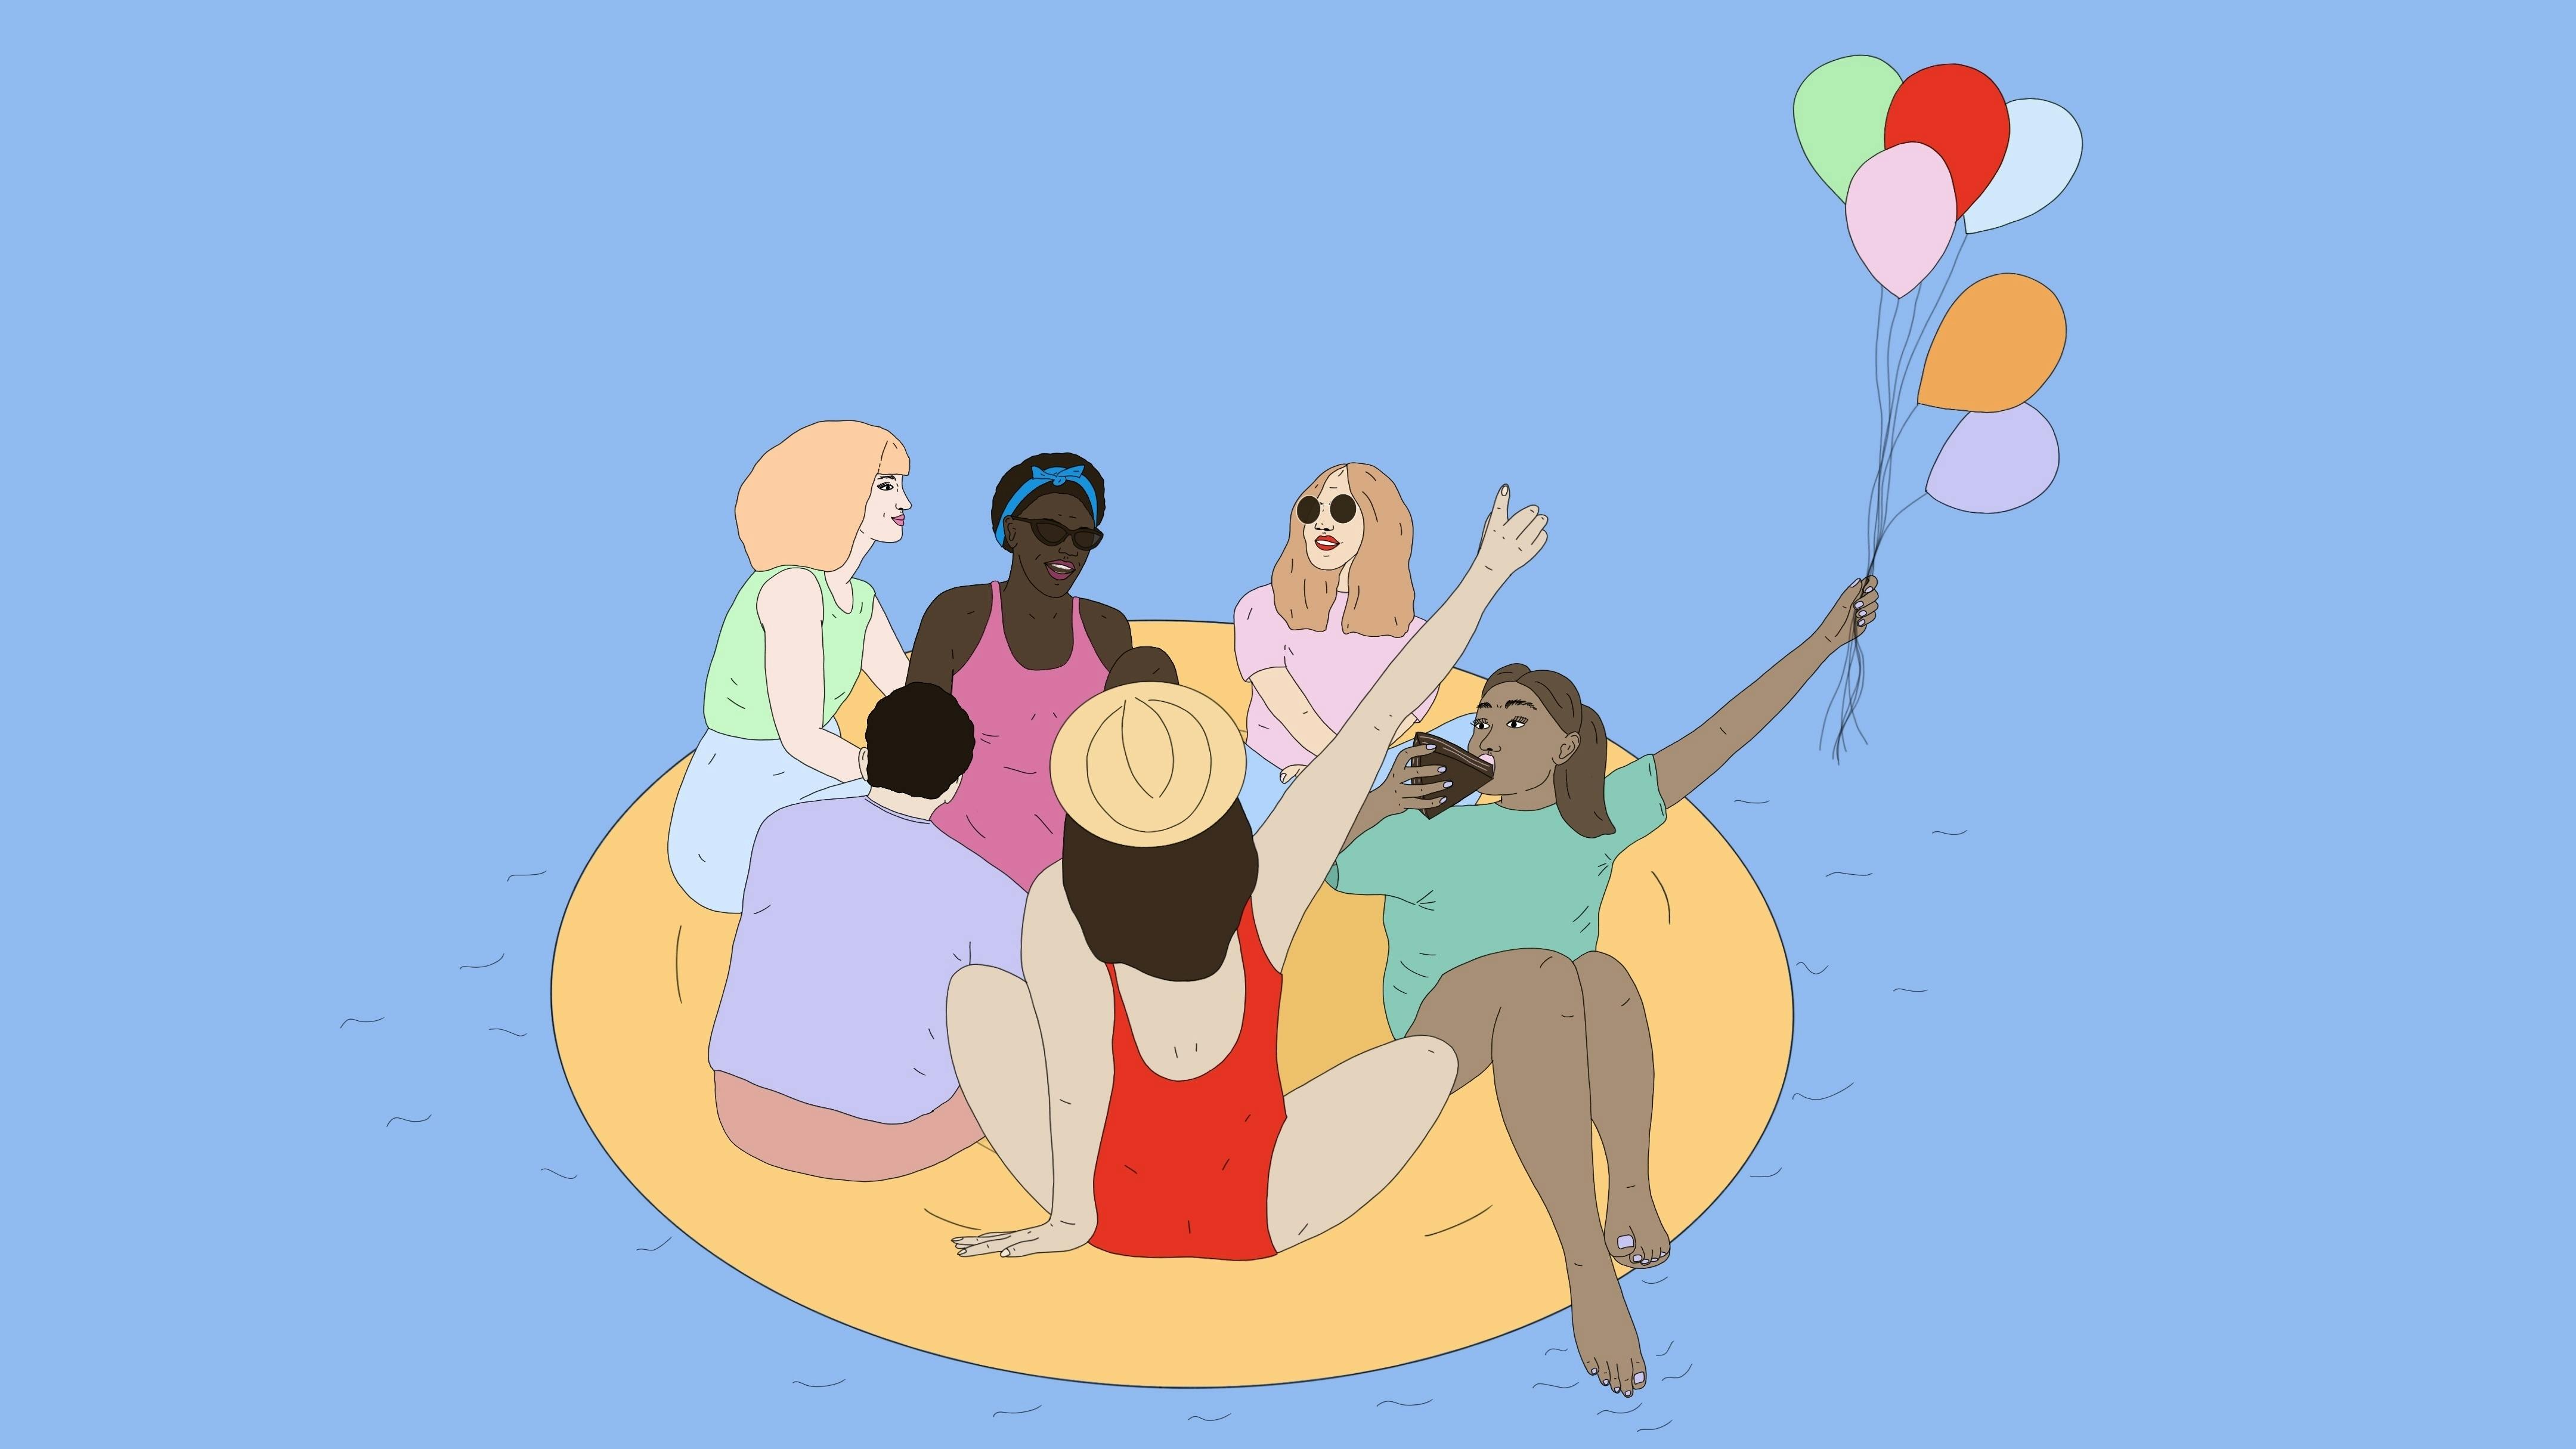 Eine Gruppe weiblich gelesener Menschen sitzt sommerlich gekleidet auf einer Decke mit Luftballons und feiert.